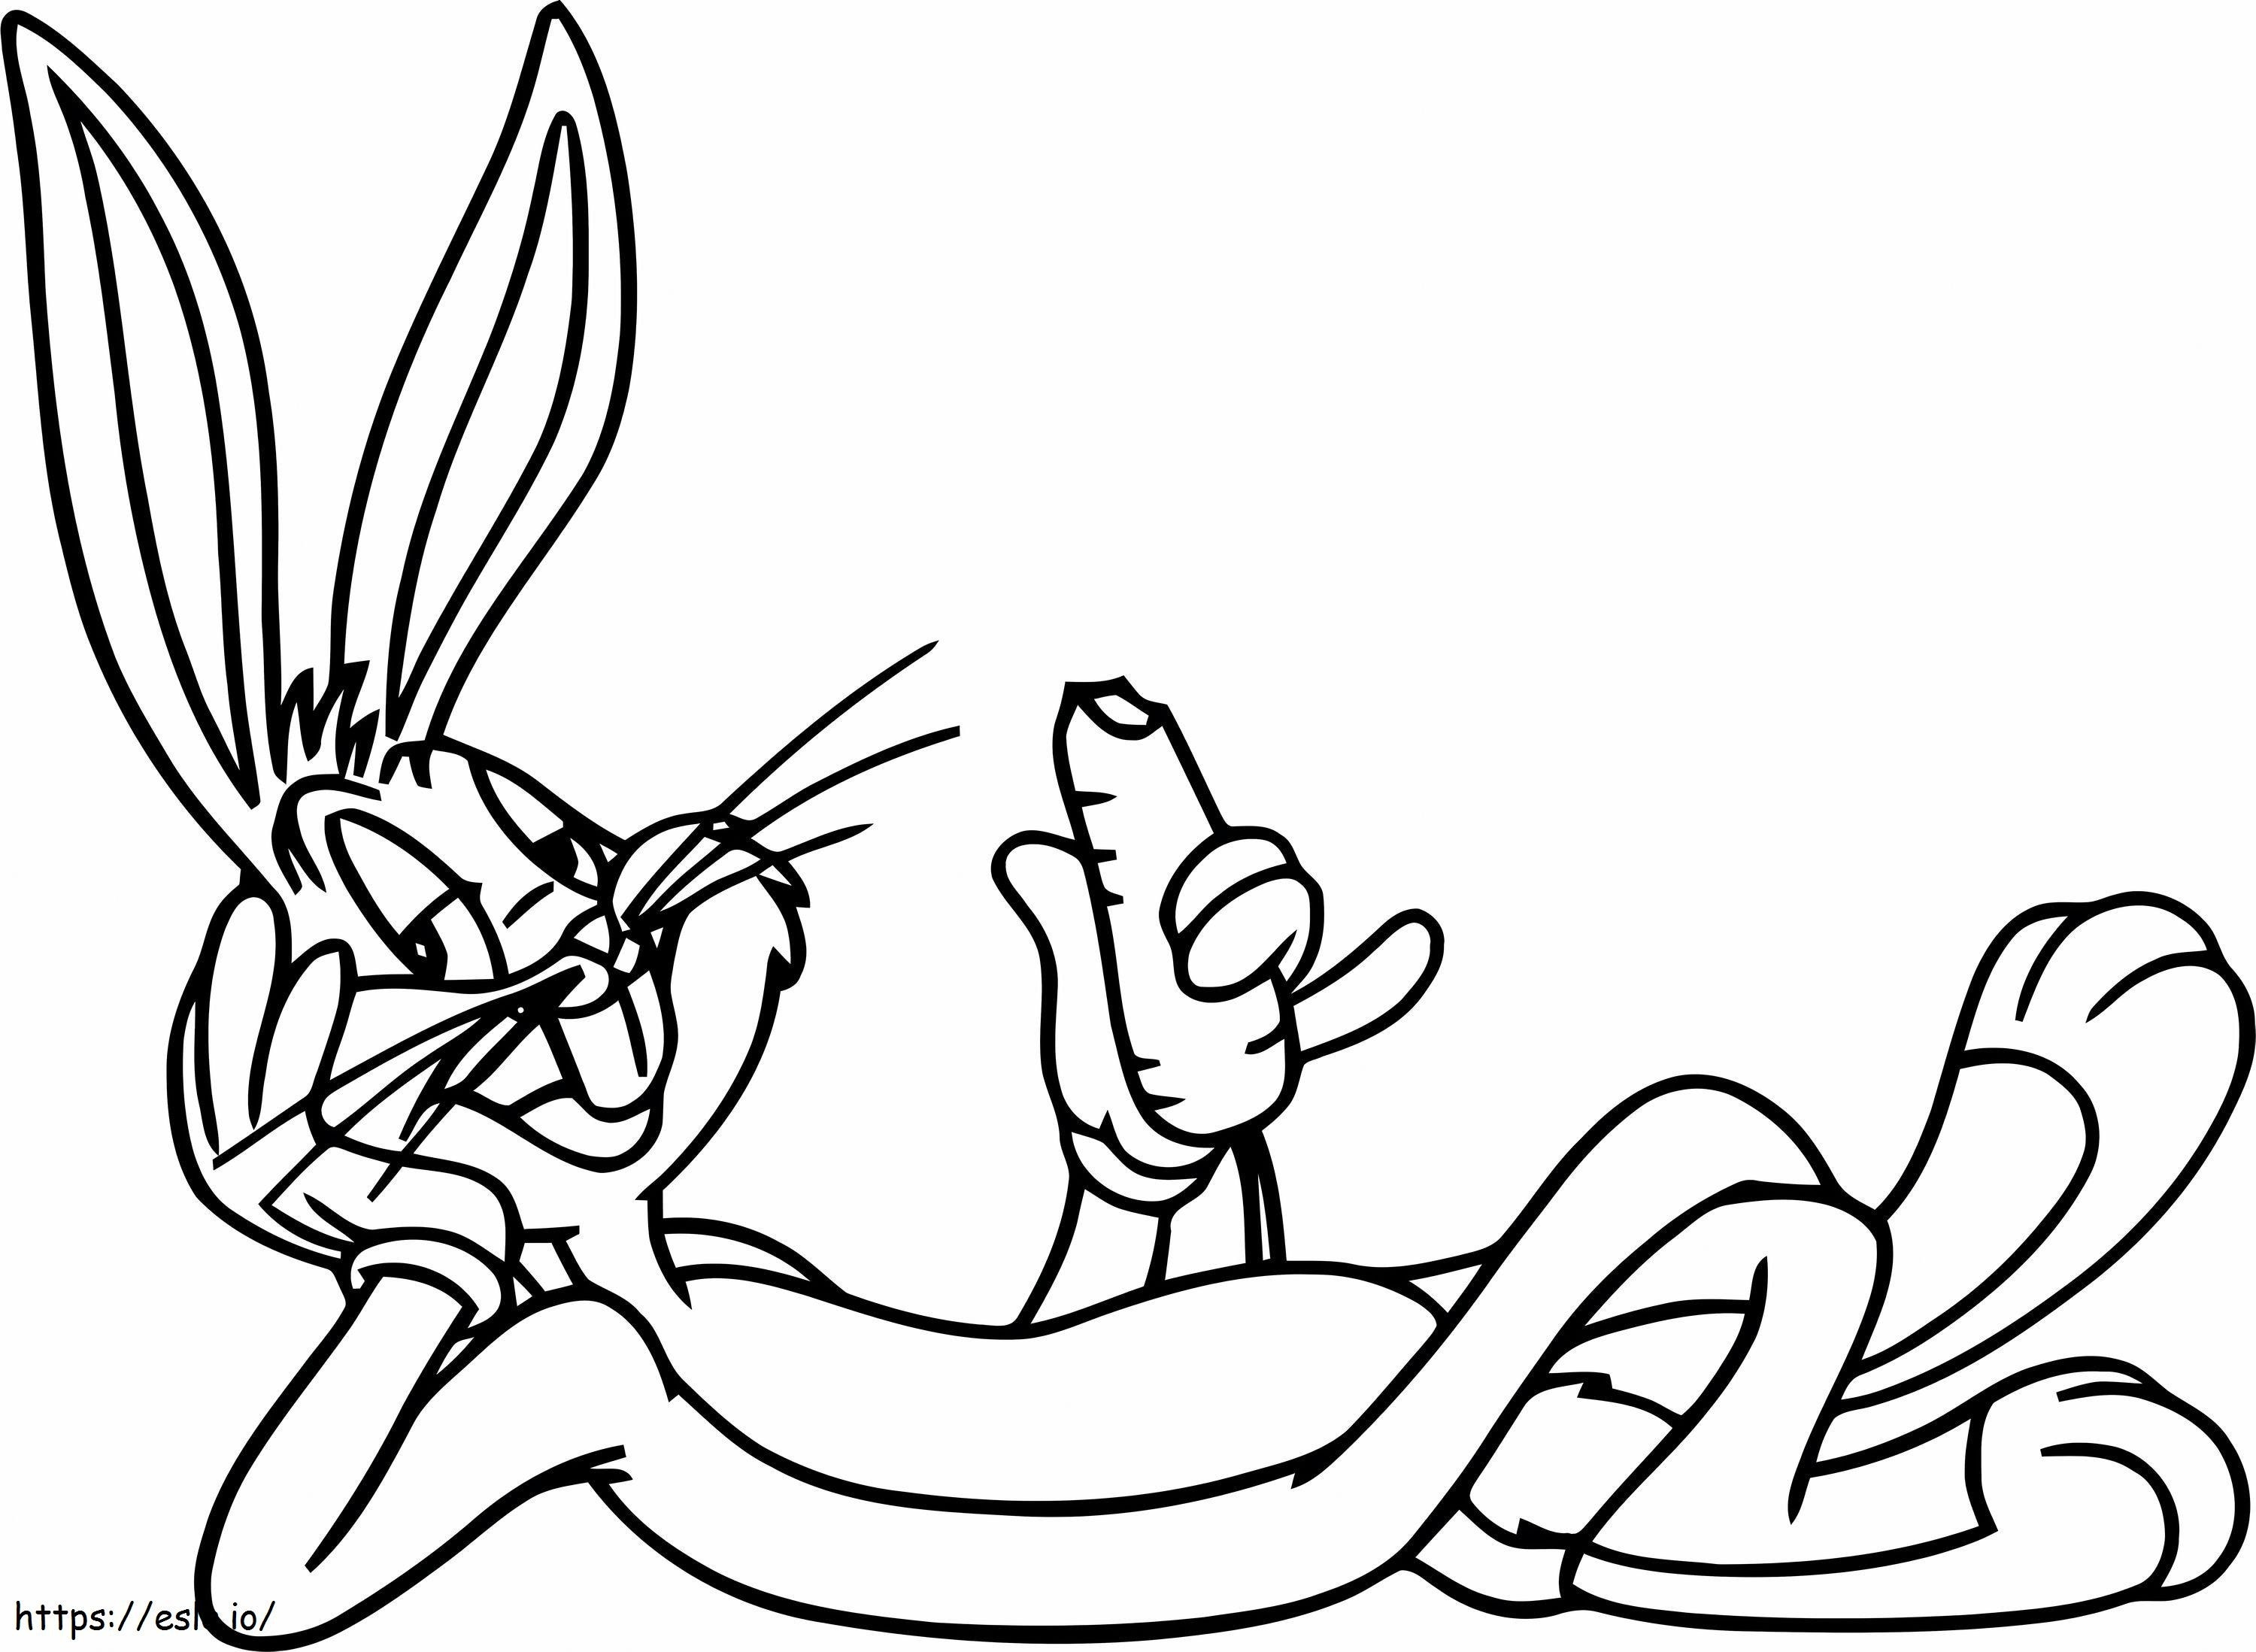 Bugs Bunny mănâncă morcovi în solzi de colorat